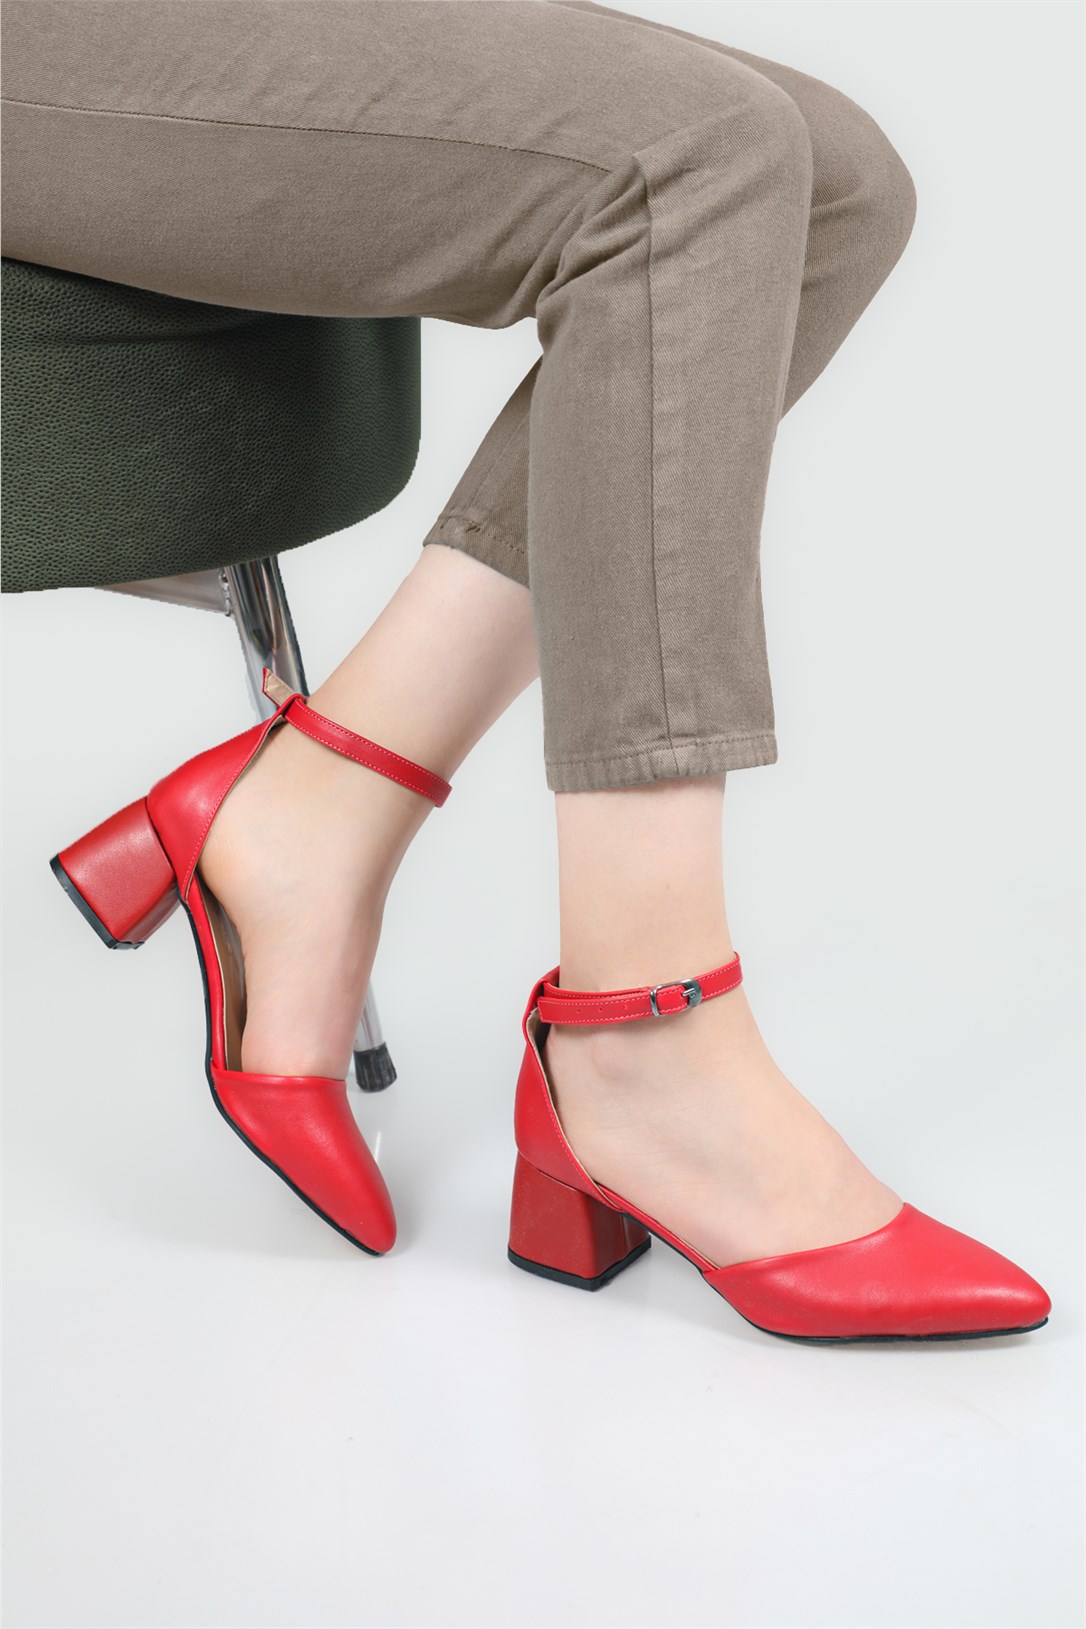 Carla Bella Bilekten Tokalı Alçak Topuklu Kırmızı Kadın Ayakkabı DR-05